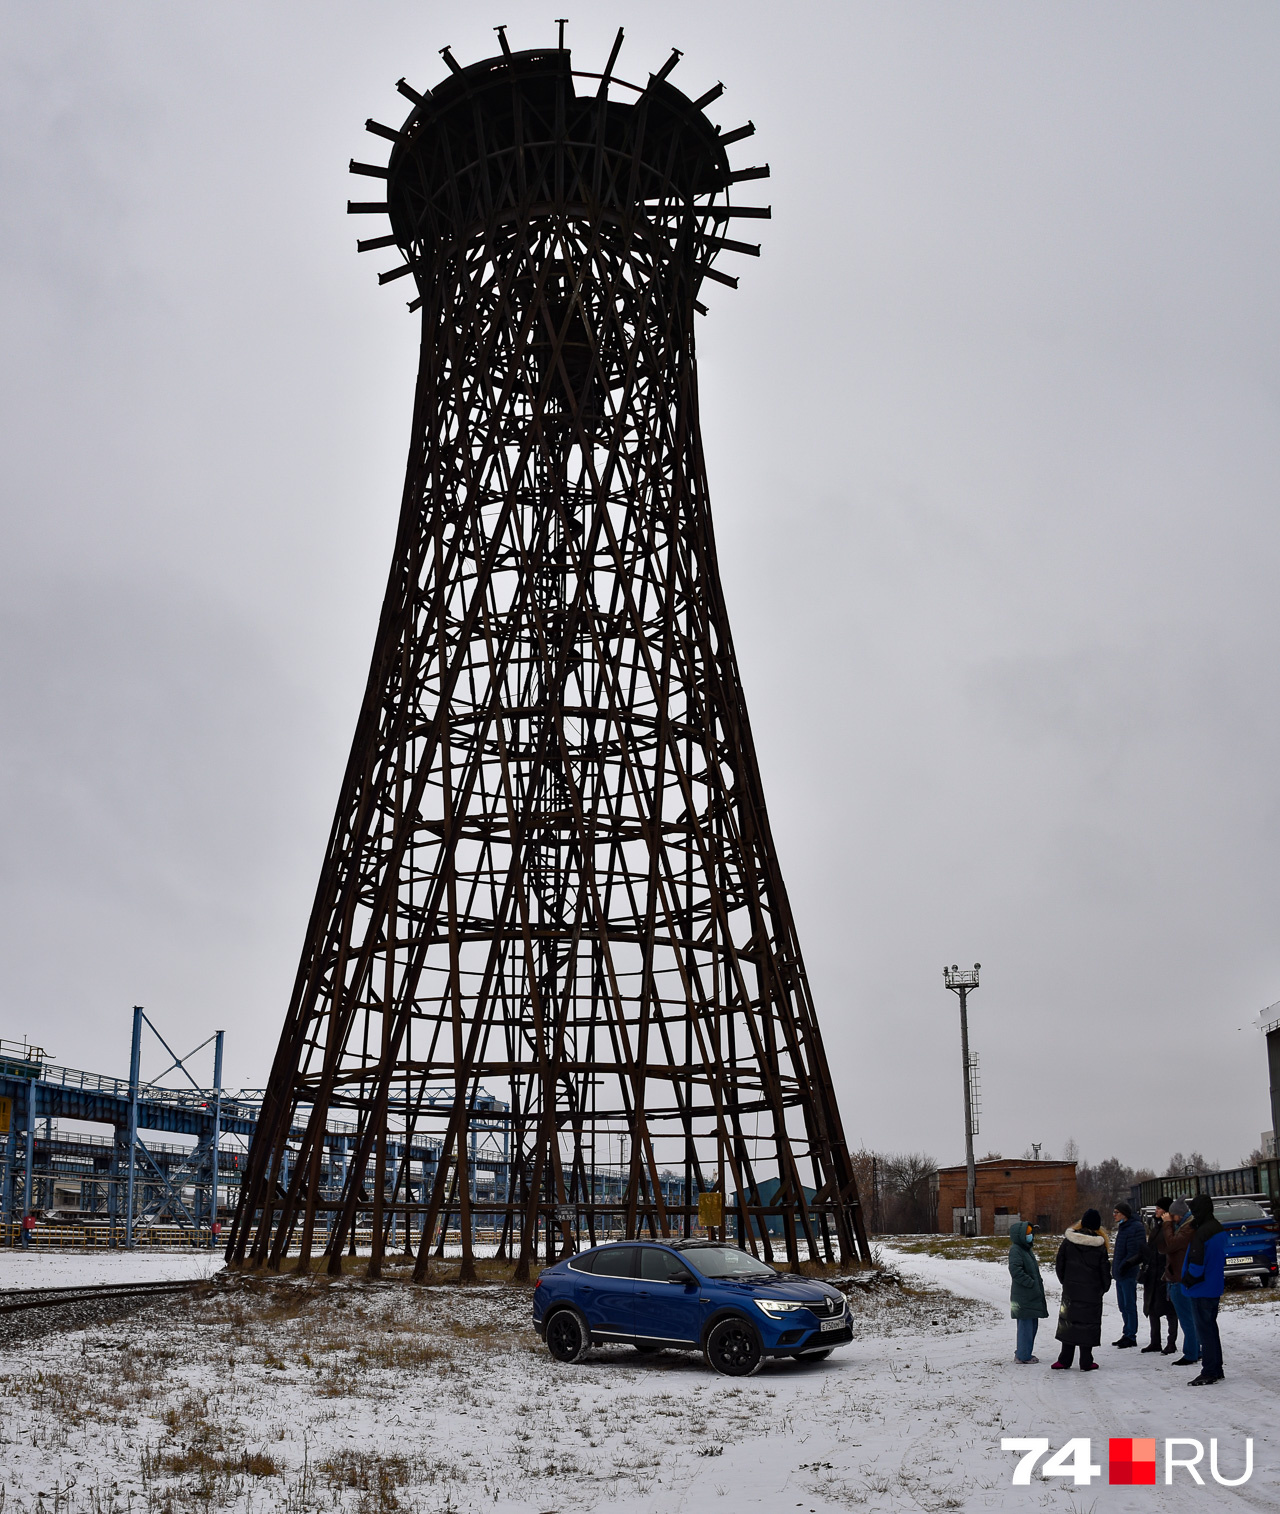 Это основание водонапорной башни, разработанное знаменитым инженером Владимиром Шуховым. Несмотря на предельно функциональную форму, выглядит арт-объектом